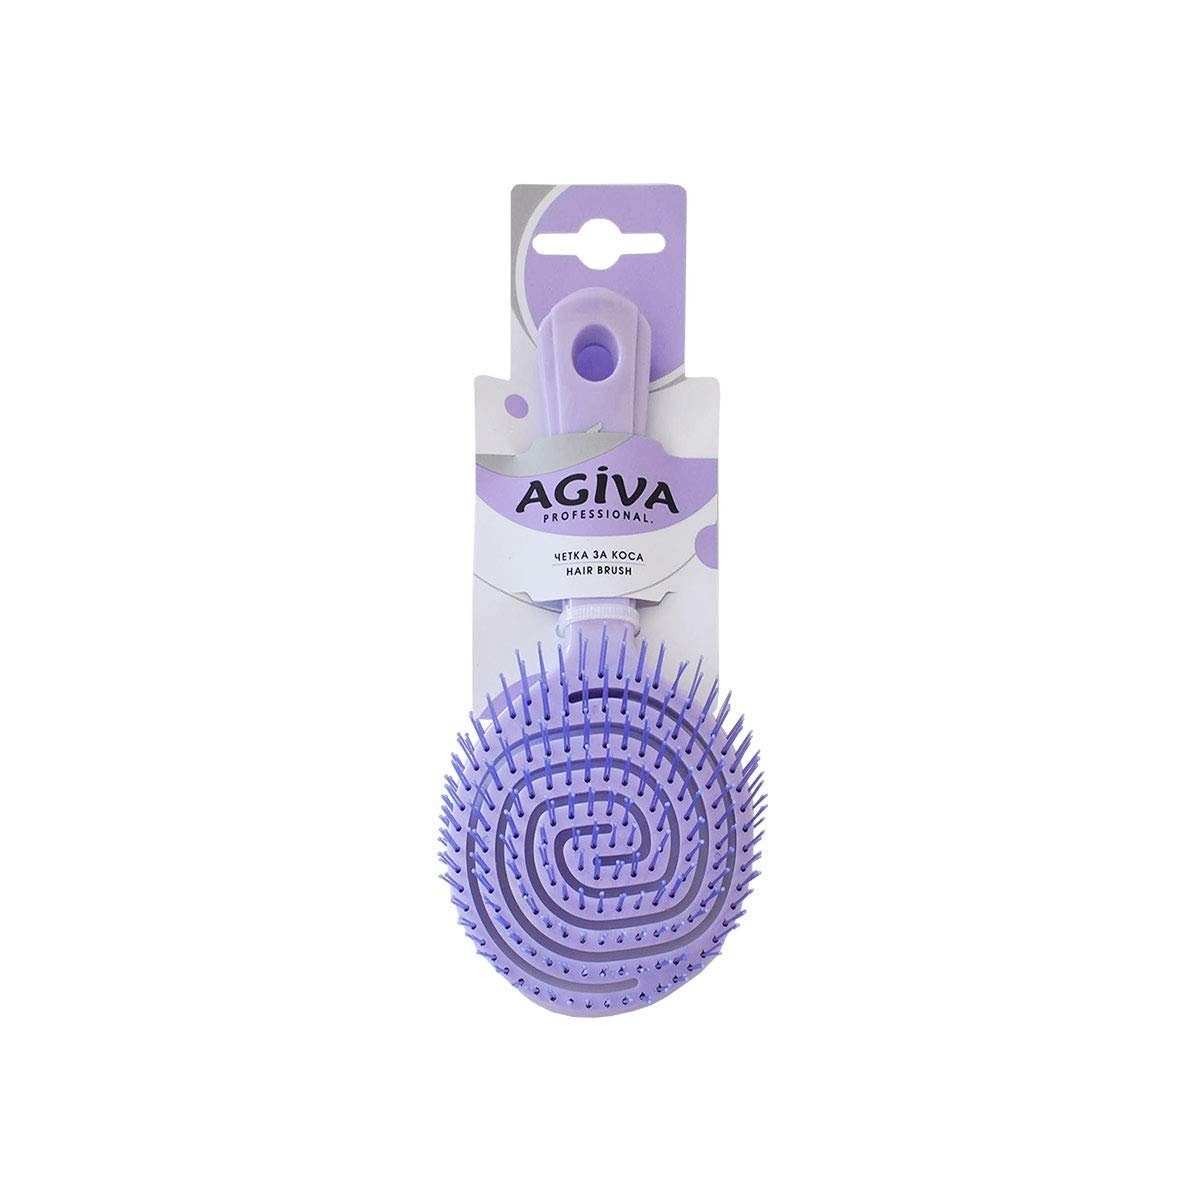 klein Lila Runde Haarbürste AGIVA Professional Agiva Haarbürste